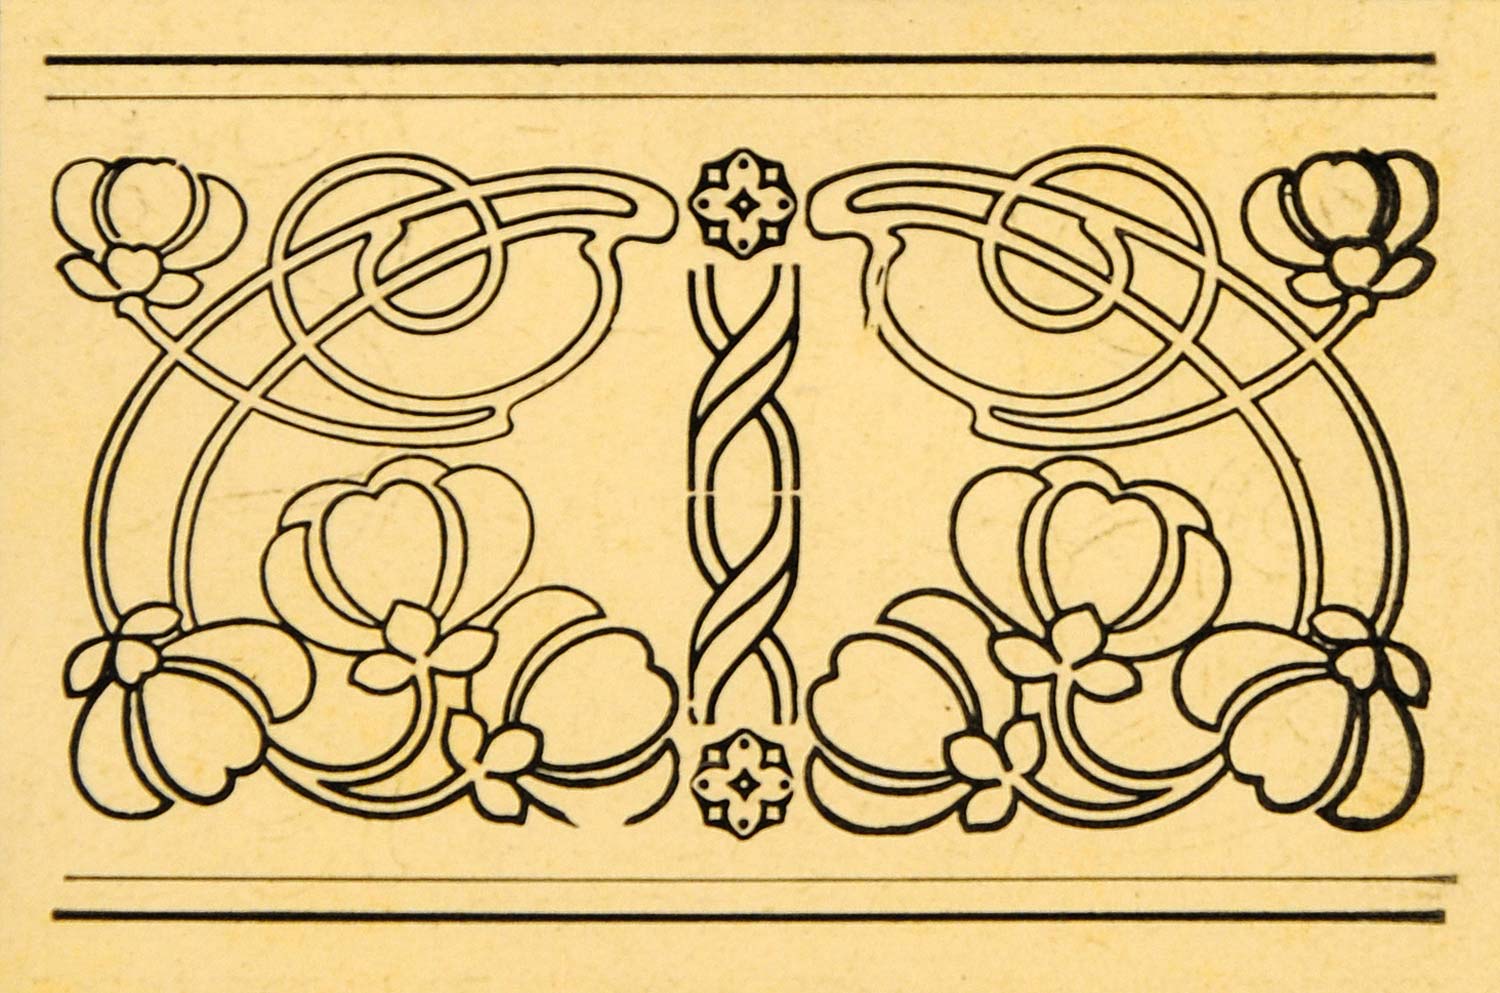 1921 Art Nouveau Floral Design Border Lithograph - ORIGINAL SIL1